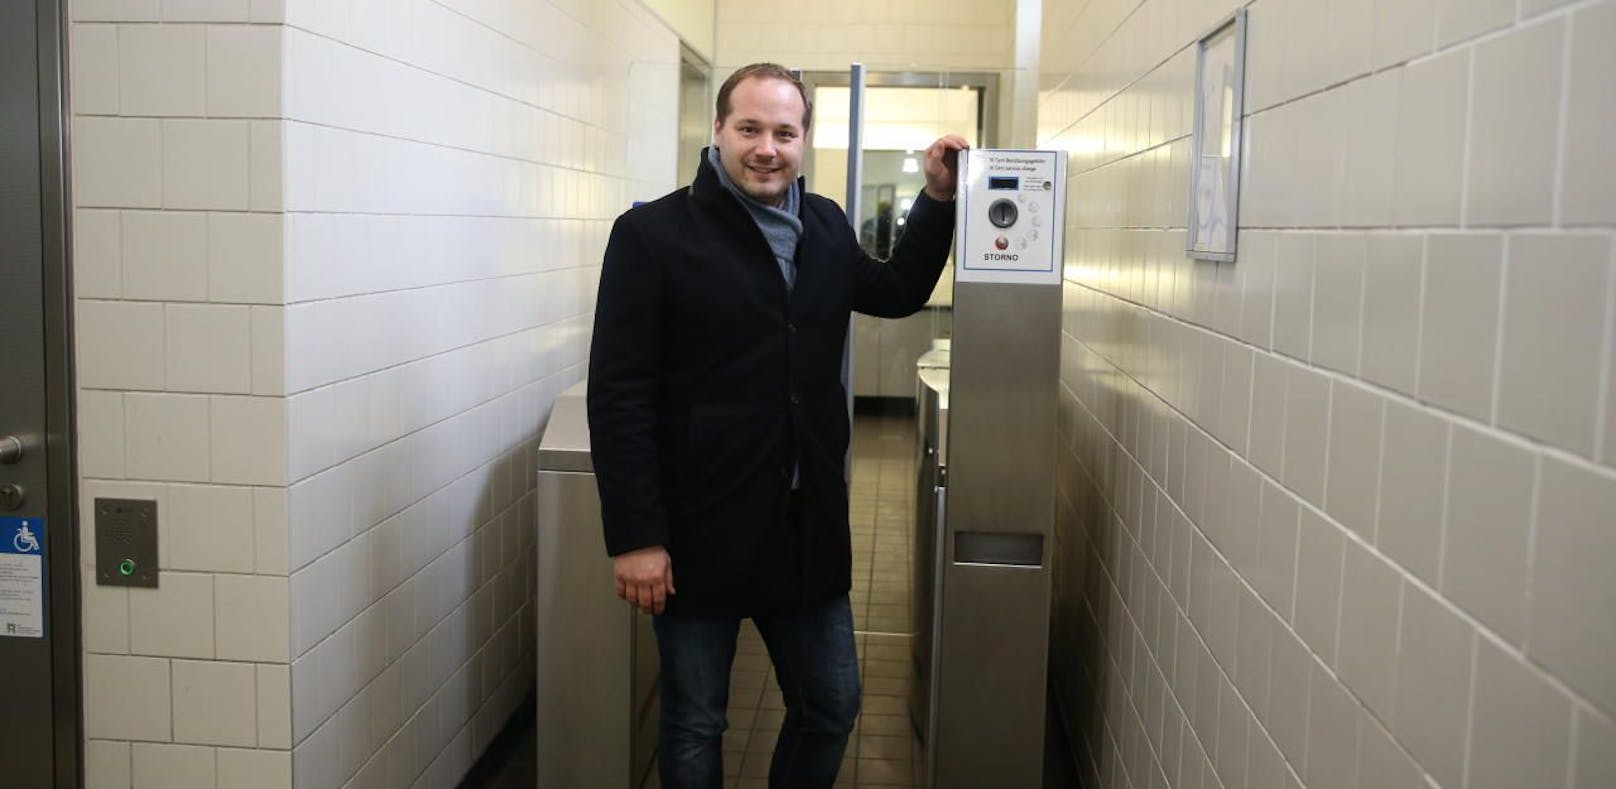 Bezirksvorsteher Daniel Resch freut sich über den Erfolg der WC-Münzen.